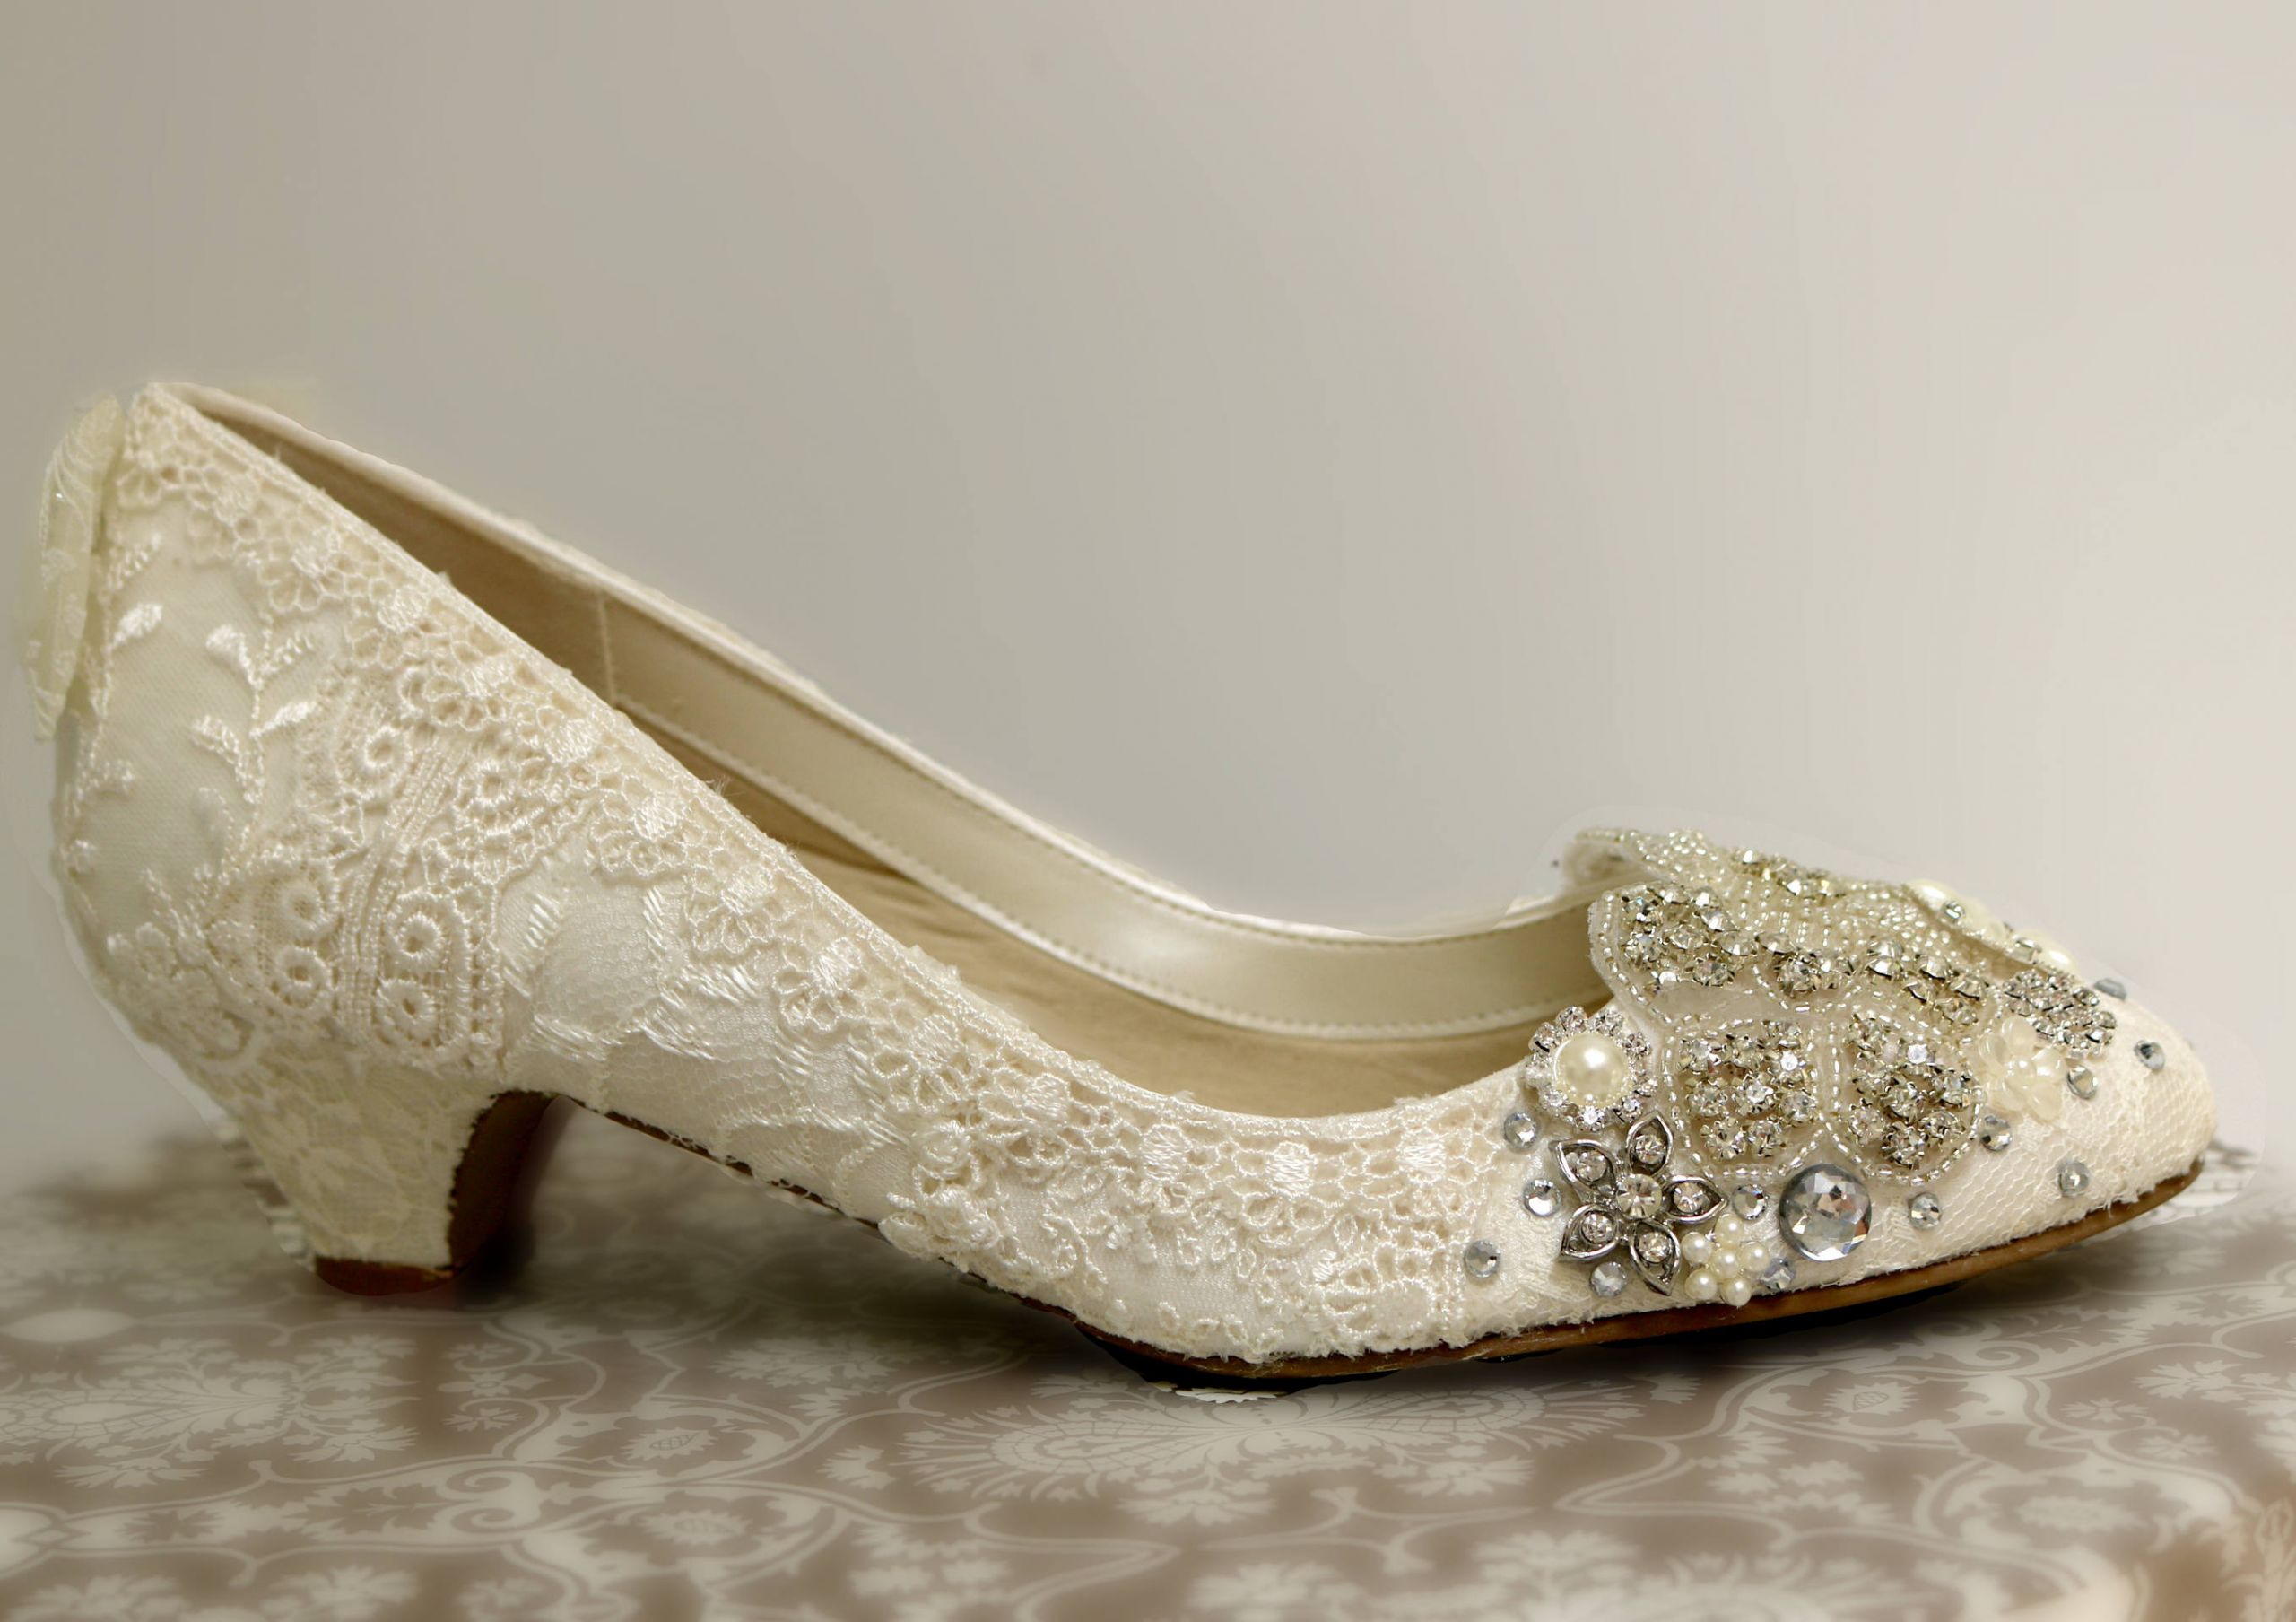 Vintage Wedding Shoes Low Heel
 Low Heel Wedding Shoes Ivory Lace Wedding Shoes Vintage